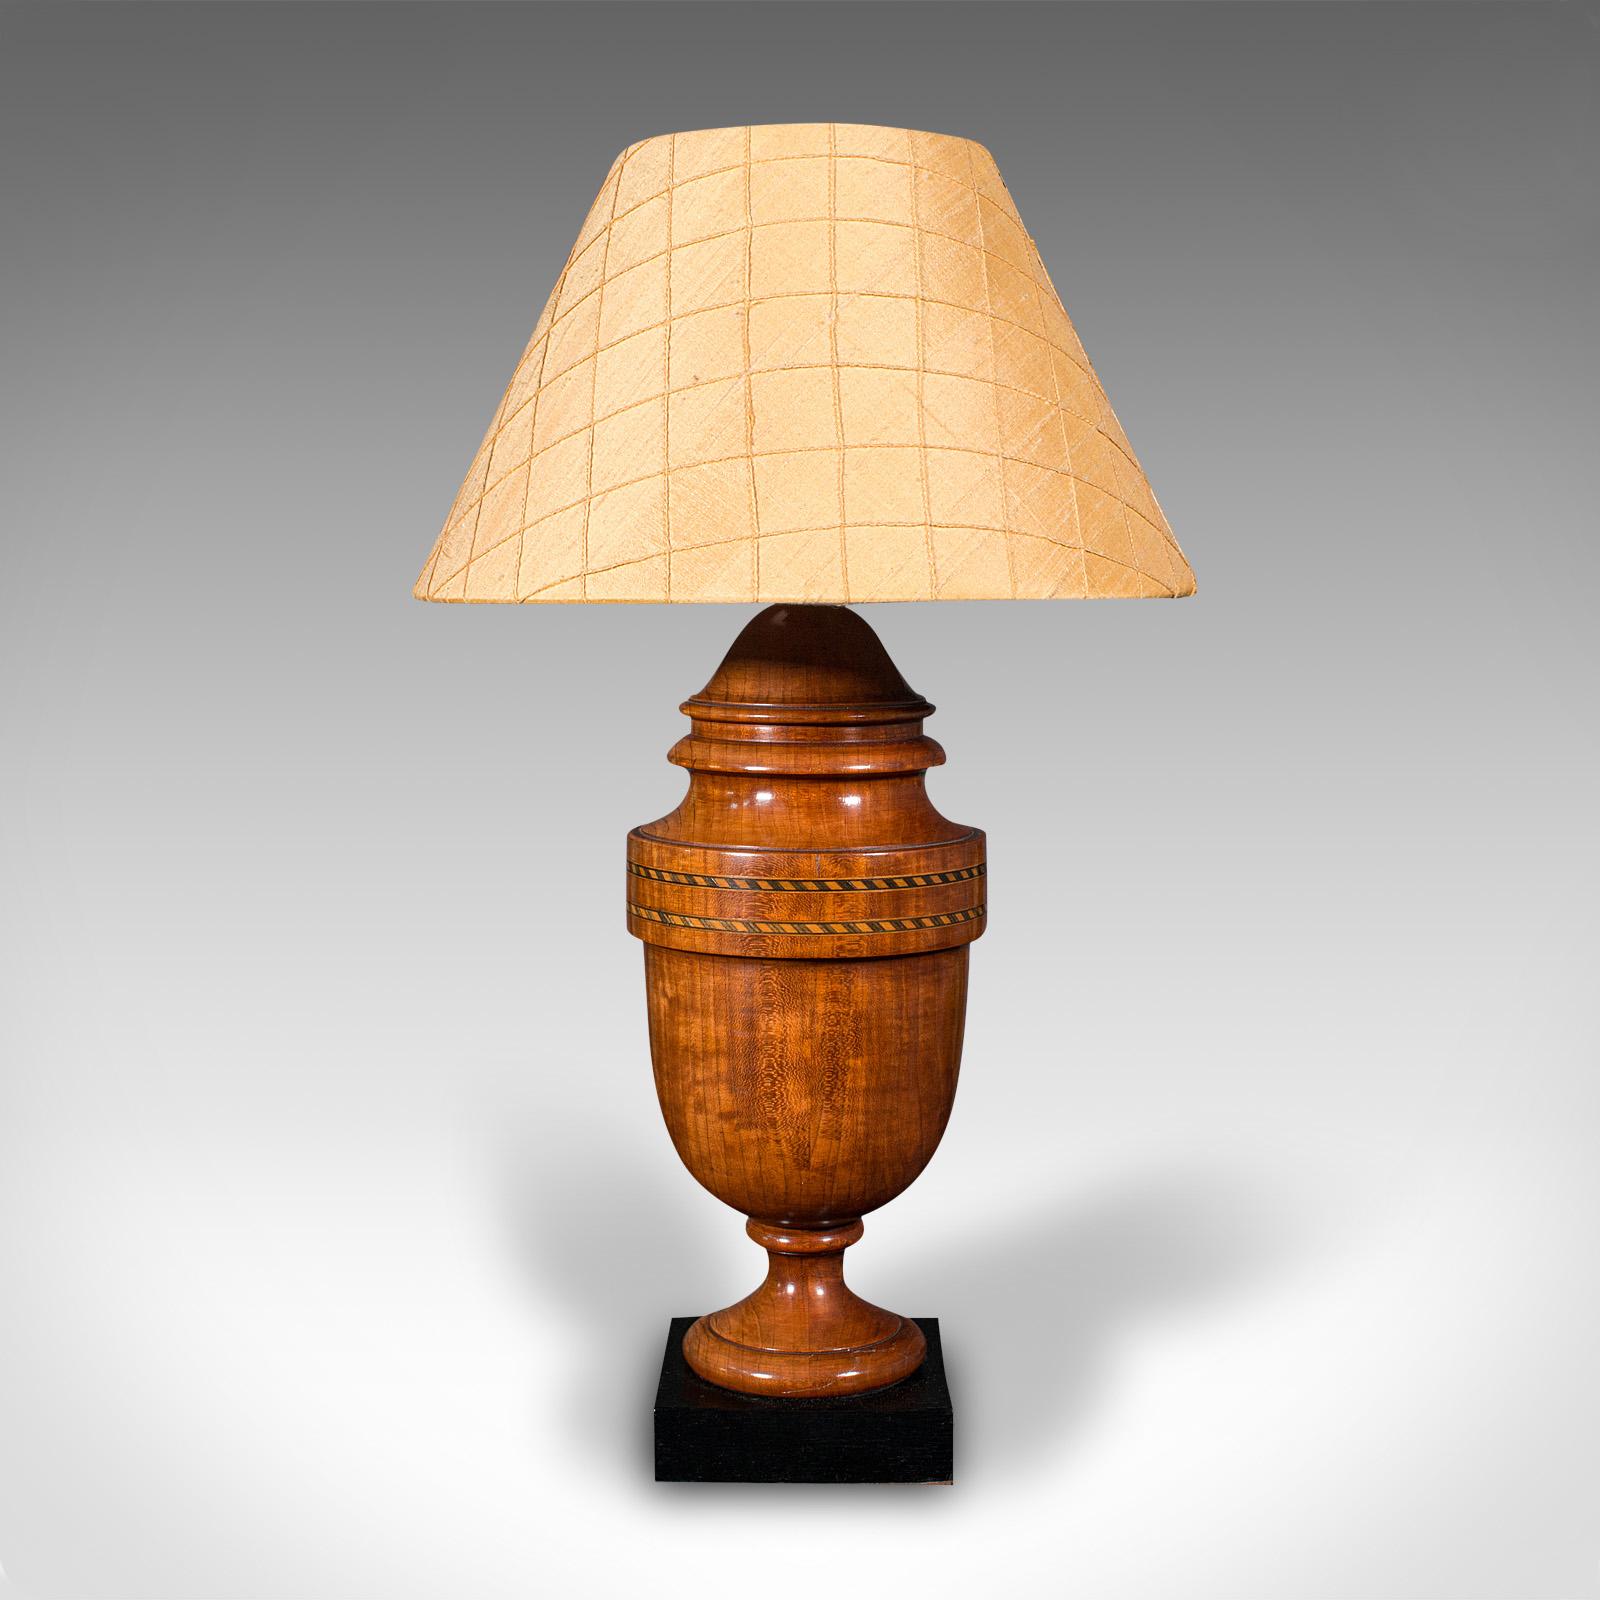 20th Century Vintage Table Lamp, English, Turned Walnut, Boxwood, Side Light, Mid Century